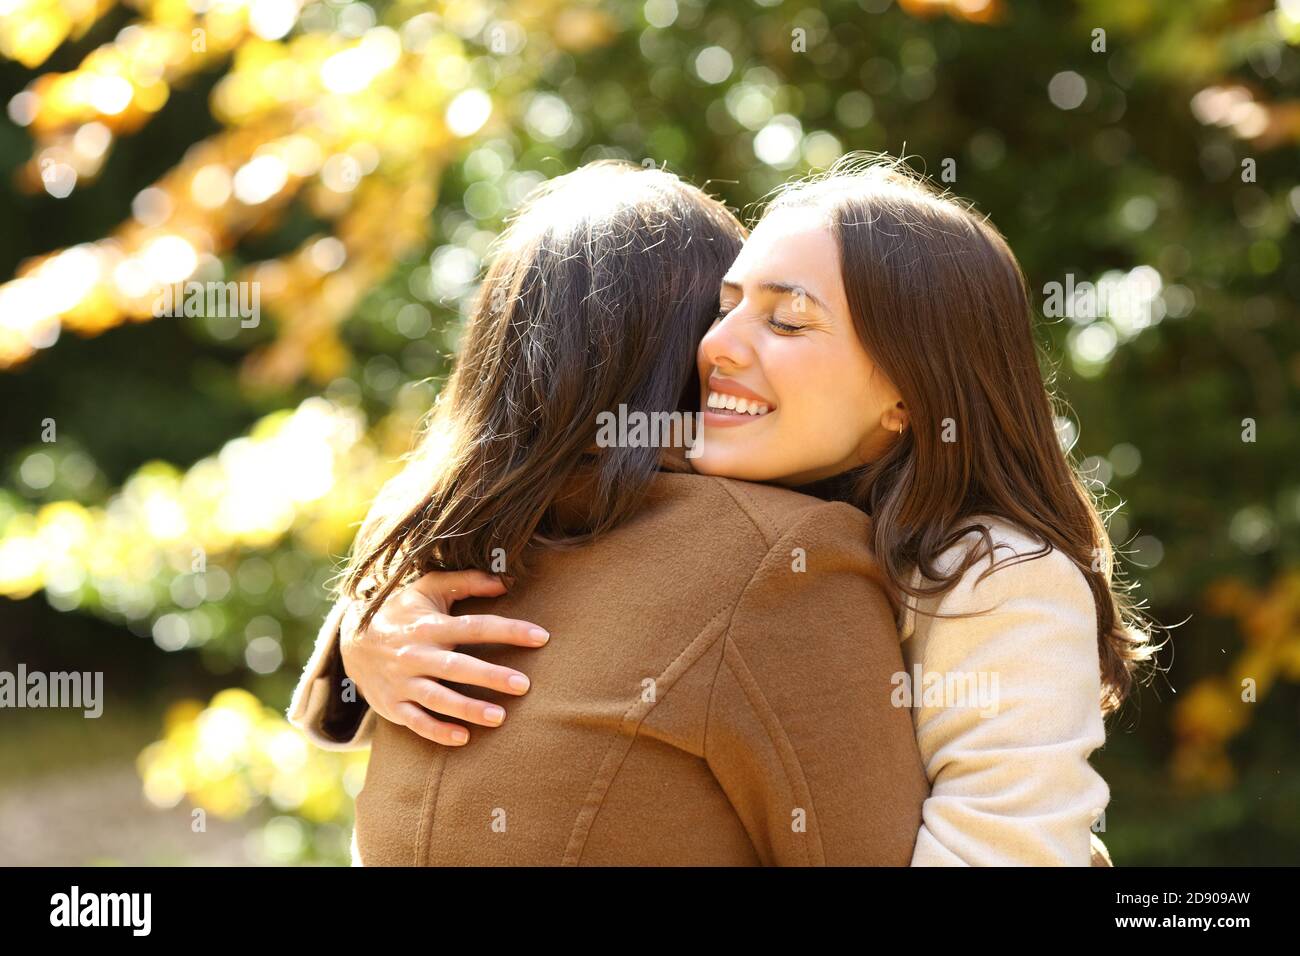 Des amis heureux se rencontrent et s'embrasser dans un parc en automne saison un jour ensoleillé Banque D'Images